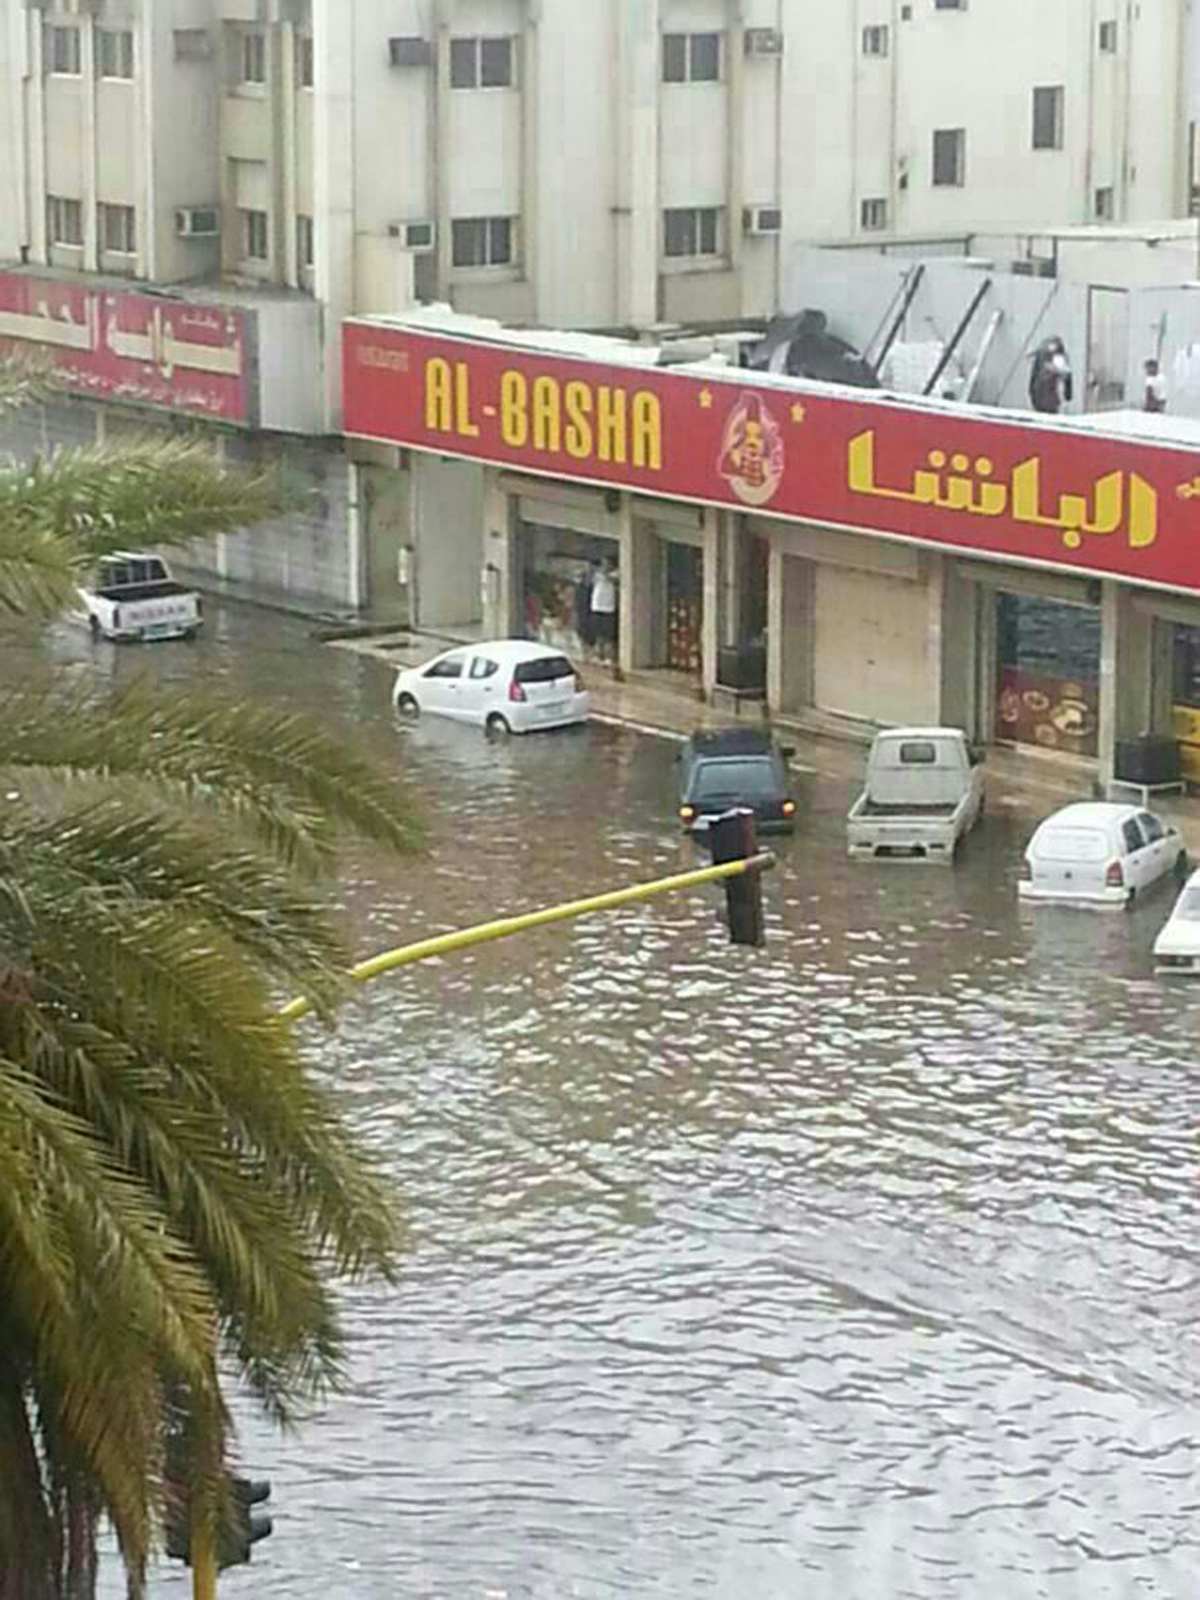 صور غرق شوارع تبوك اليوم الاحد 15-3-1434 , صور سيول أمطار تبوك 27 يناير 2013